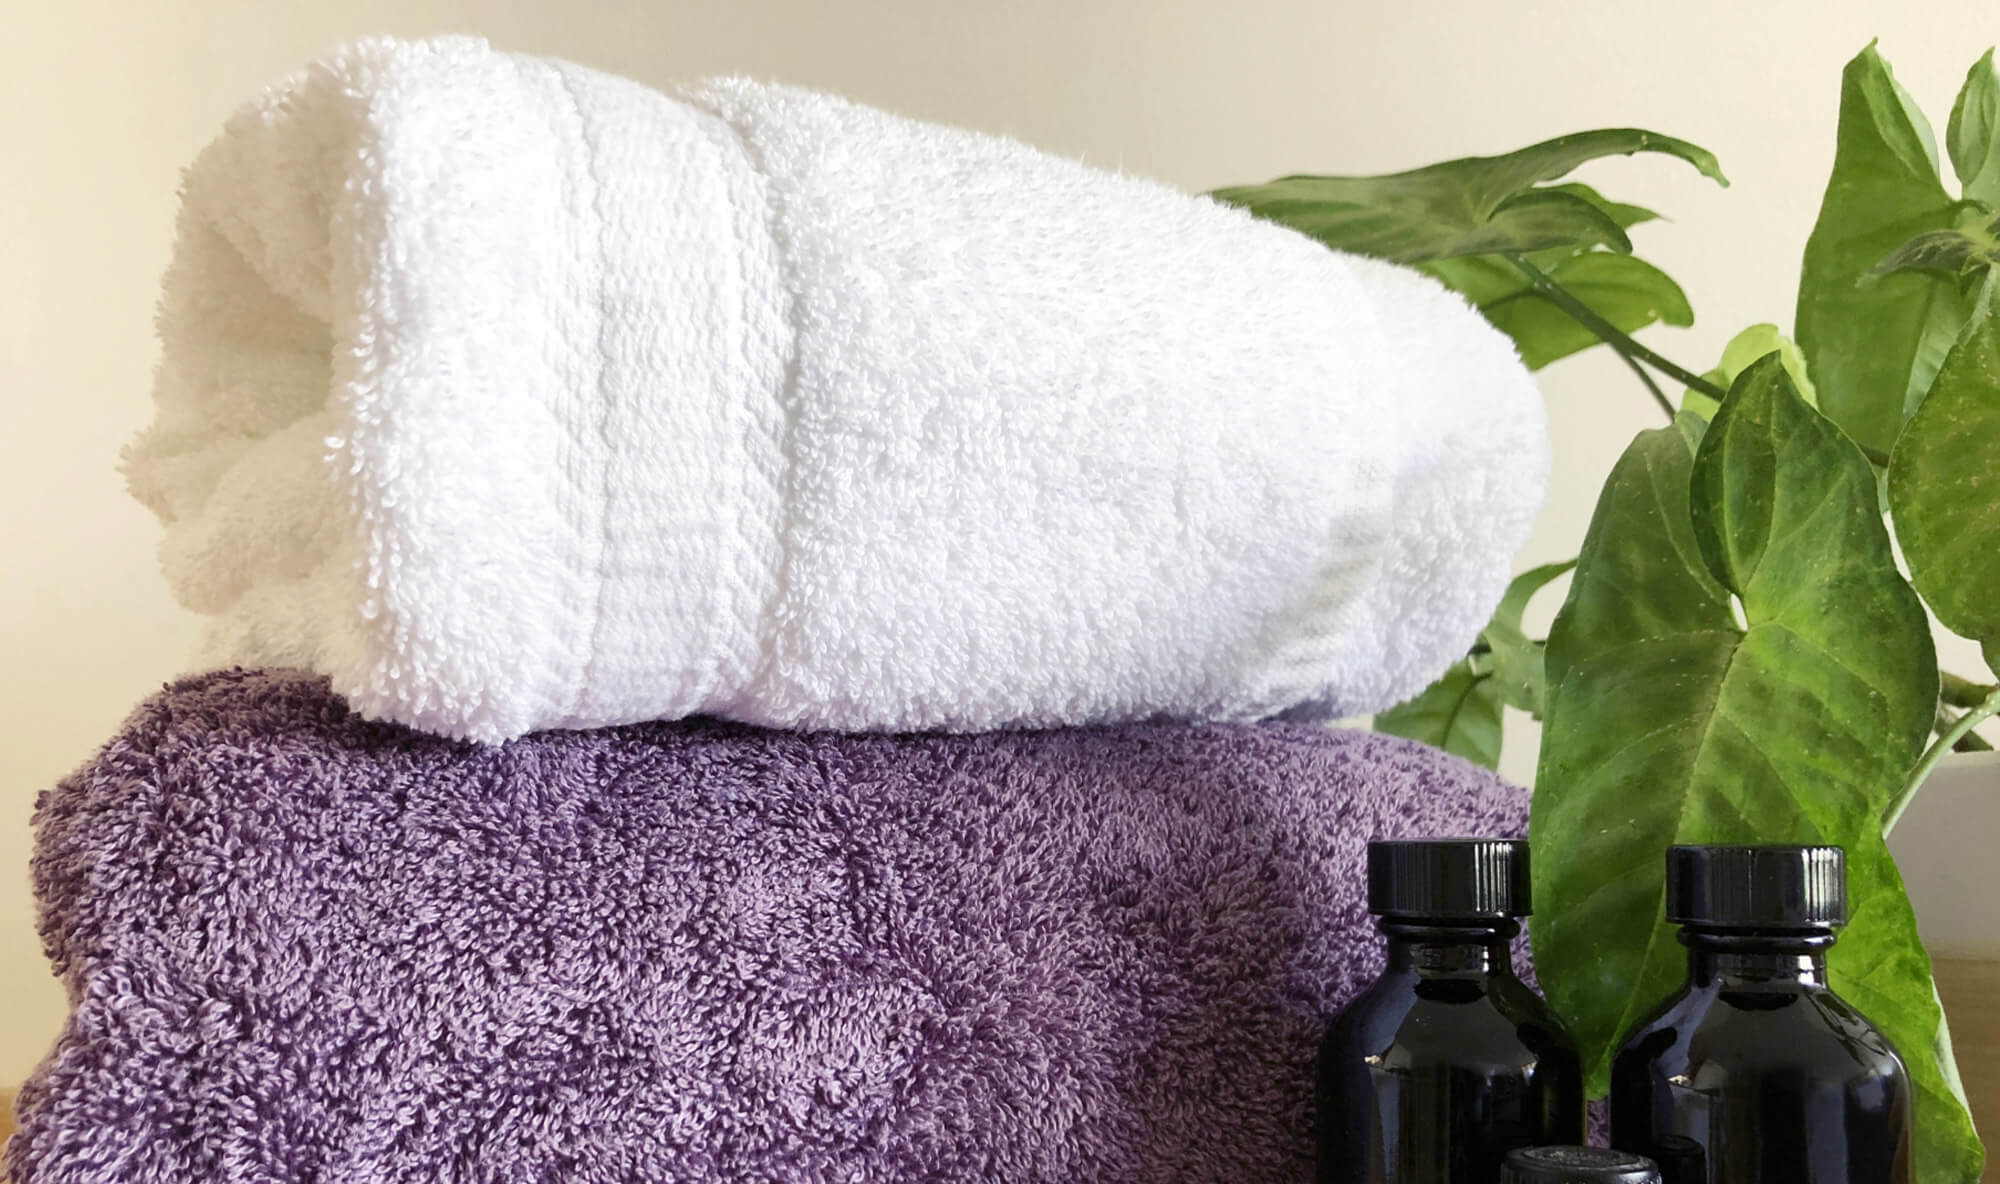 タオル枕なら家にあるバスタオルで簡単に作れるため、コストがおさえられる